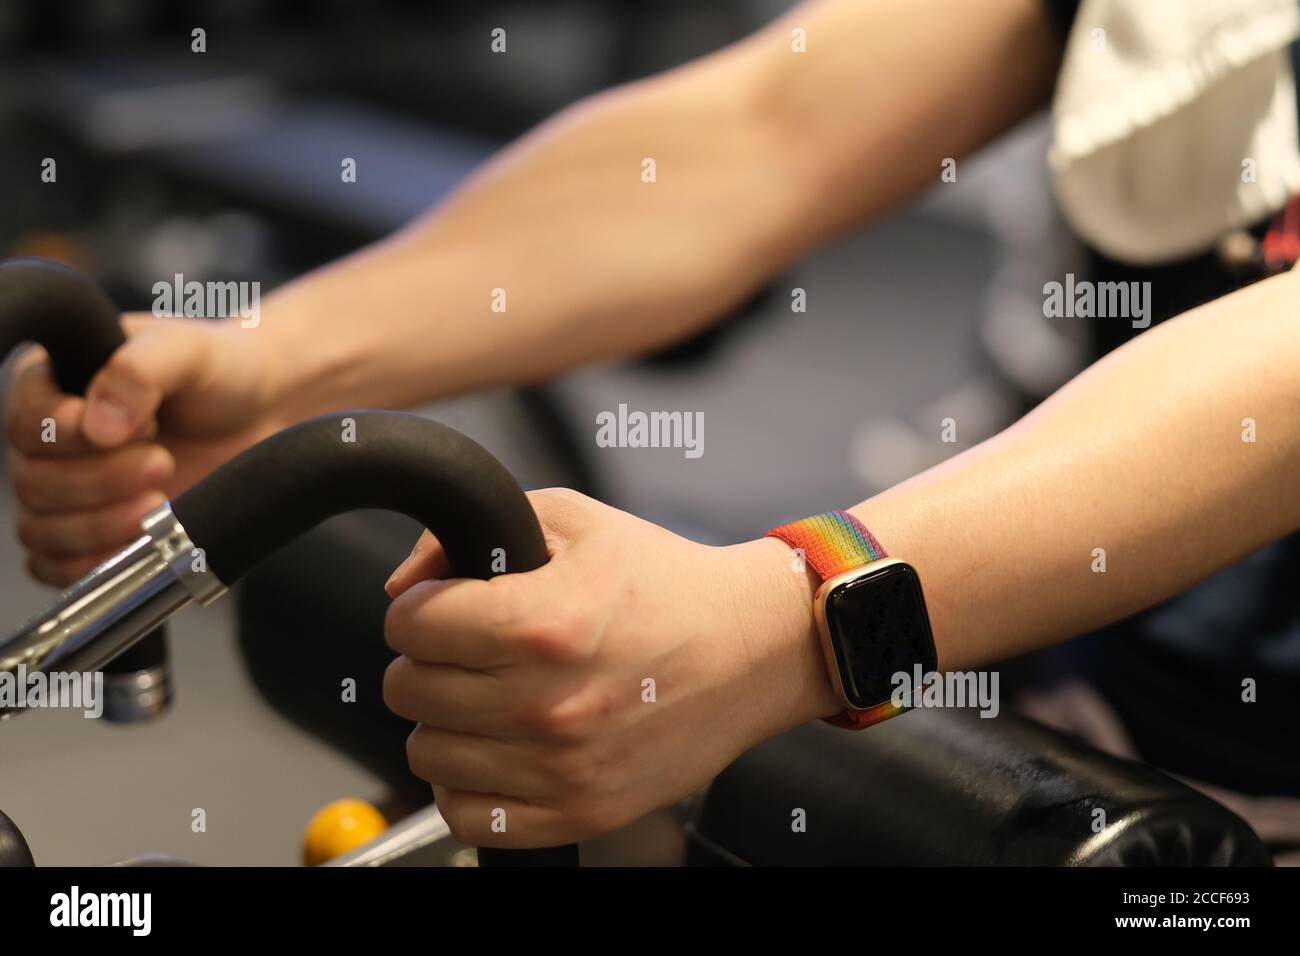 gros plan du bras de l'homme portant une montre intelligente, s'exerçant sur un équipement de gym. arrière-plan flou Banque D'Images